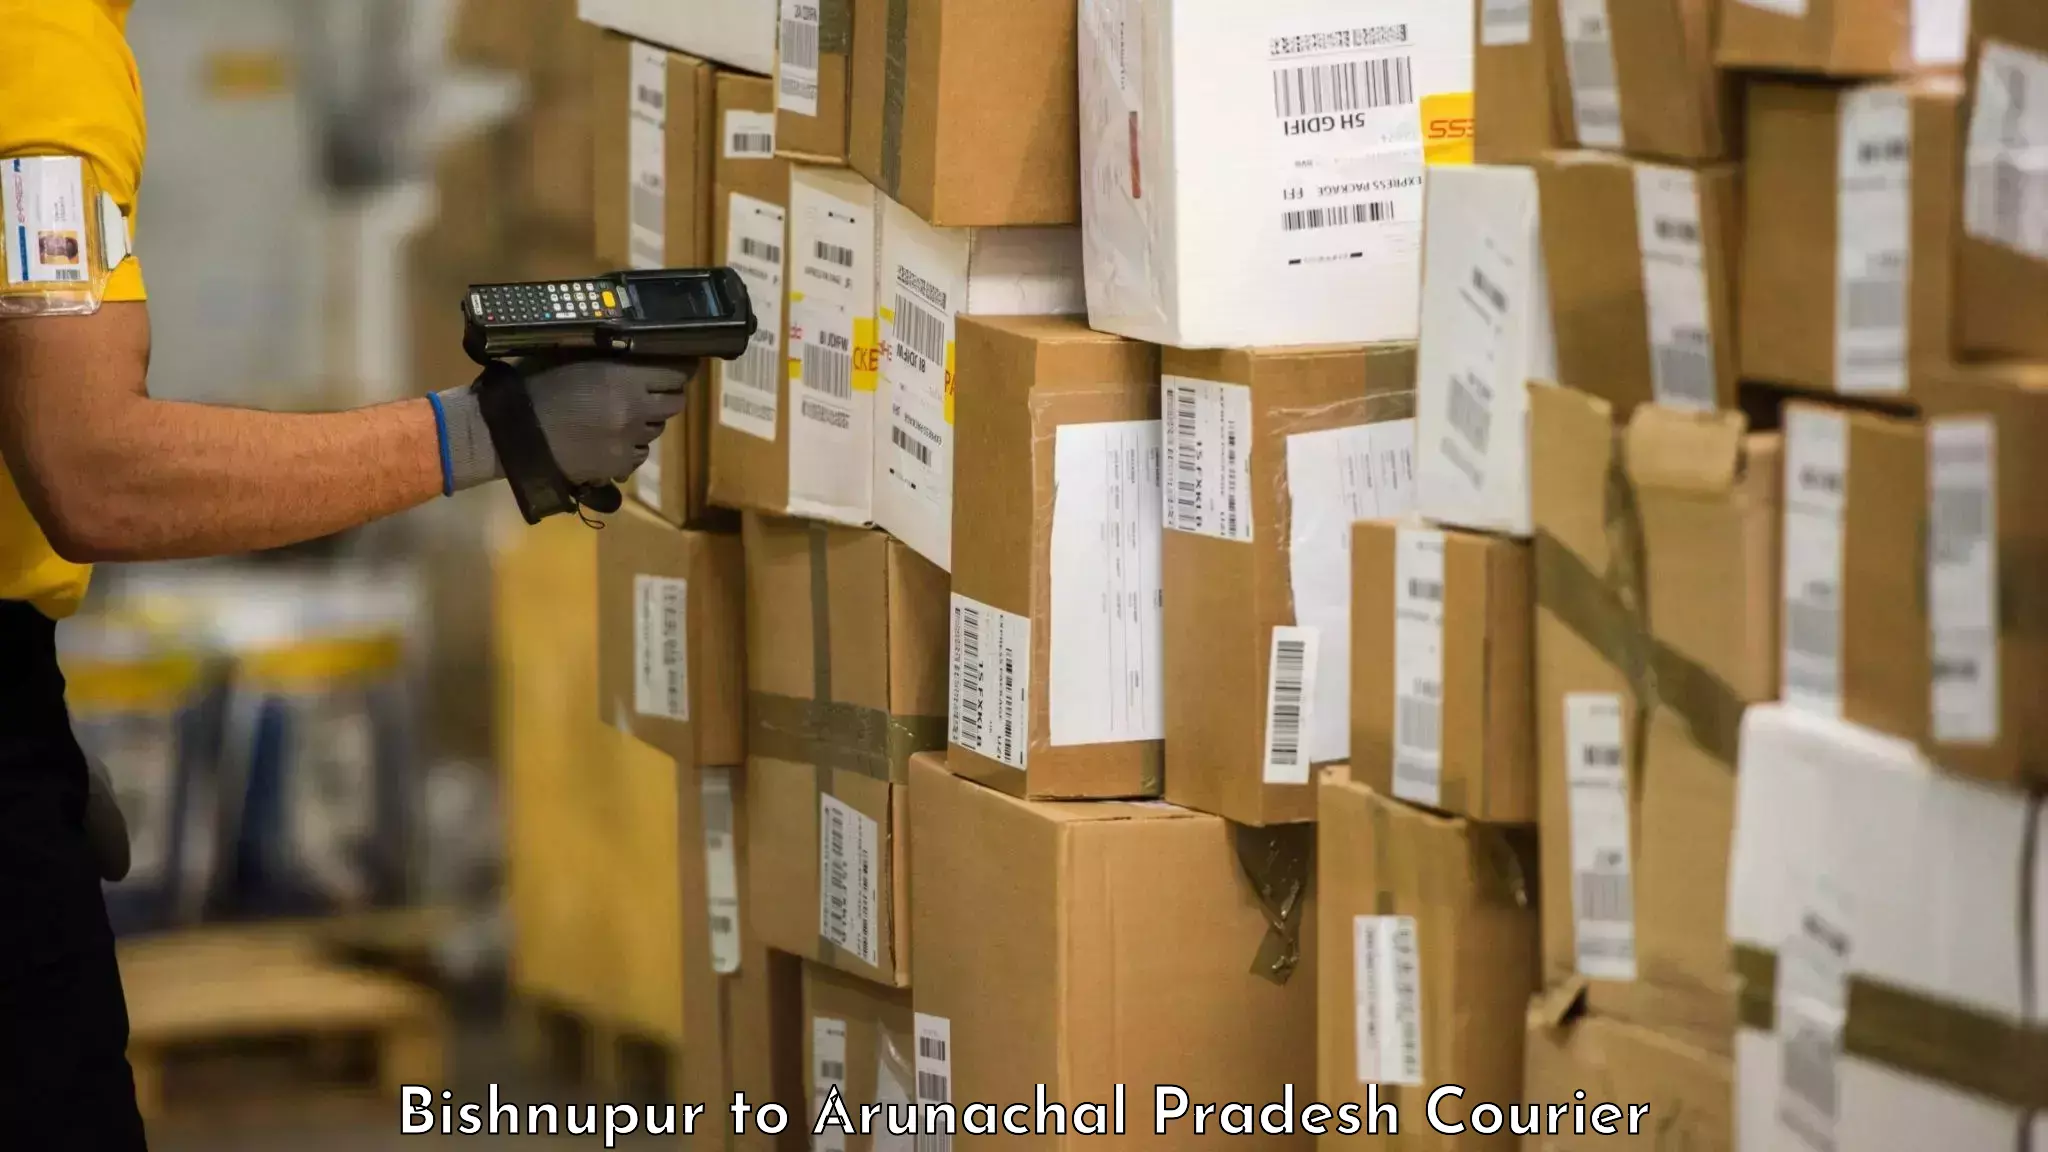 Baggage shipping experts Bishnupur to Arunachal Pradesh